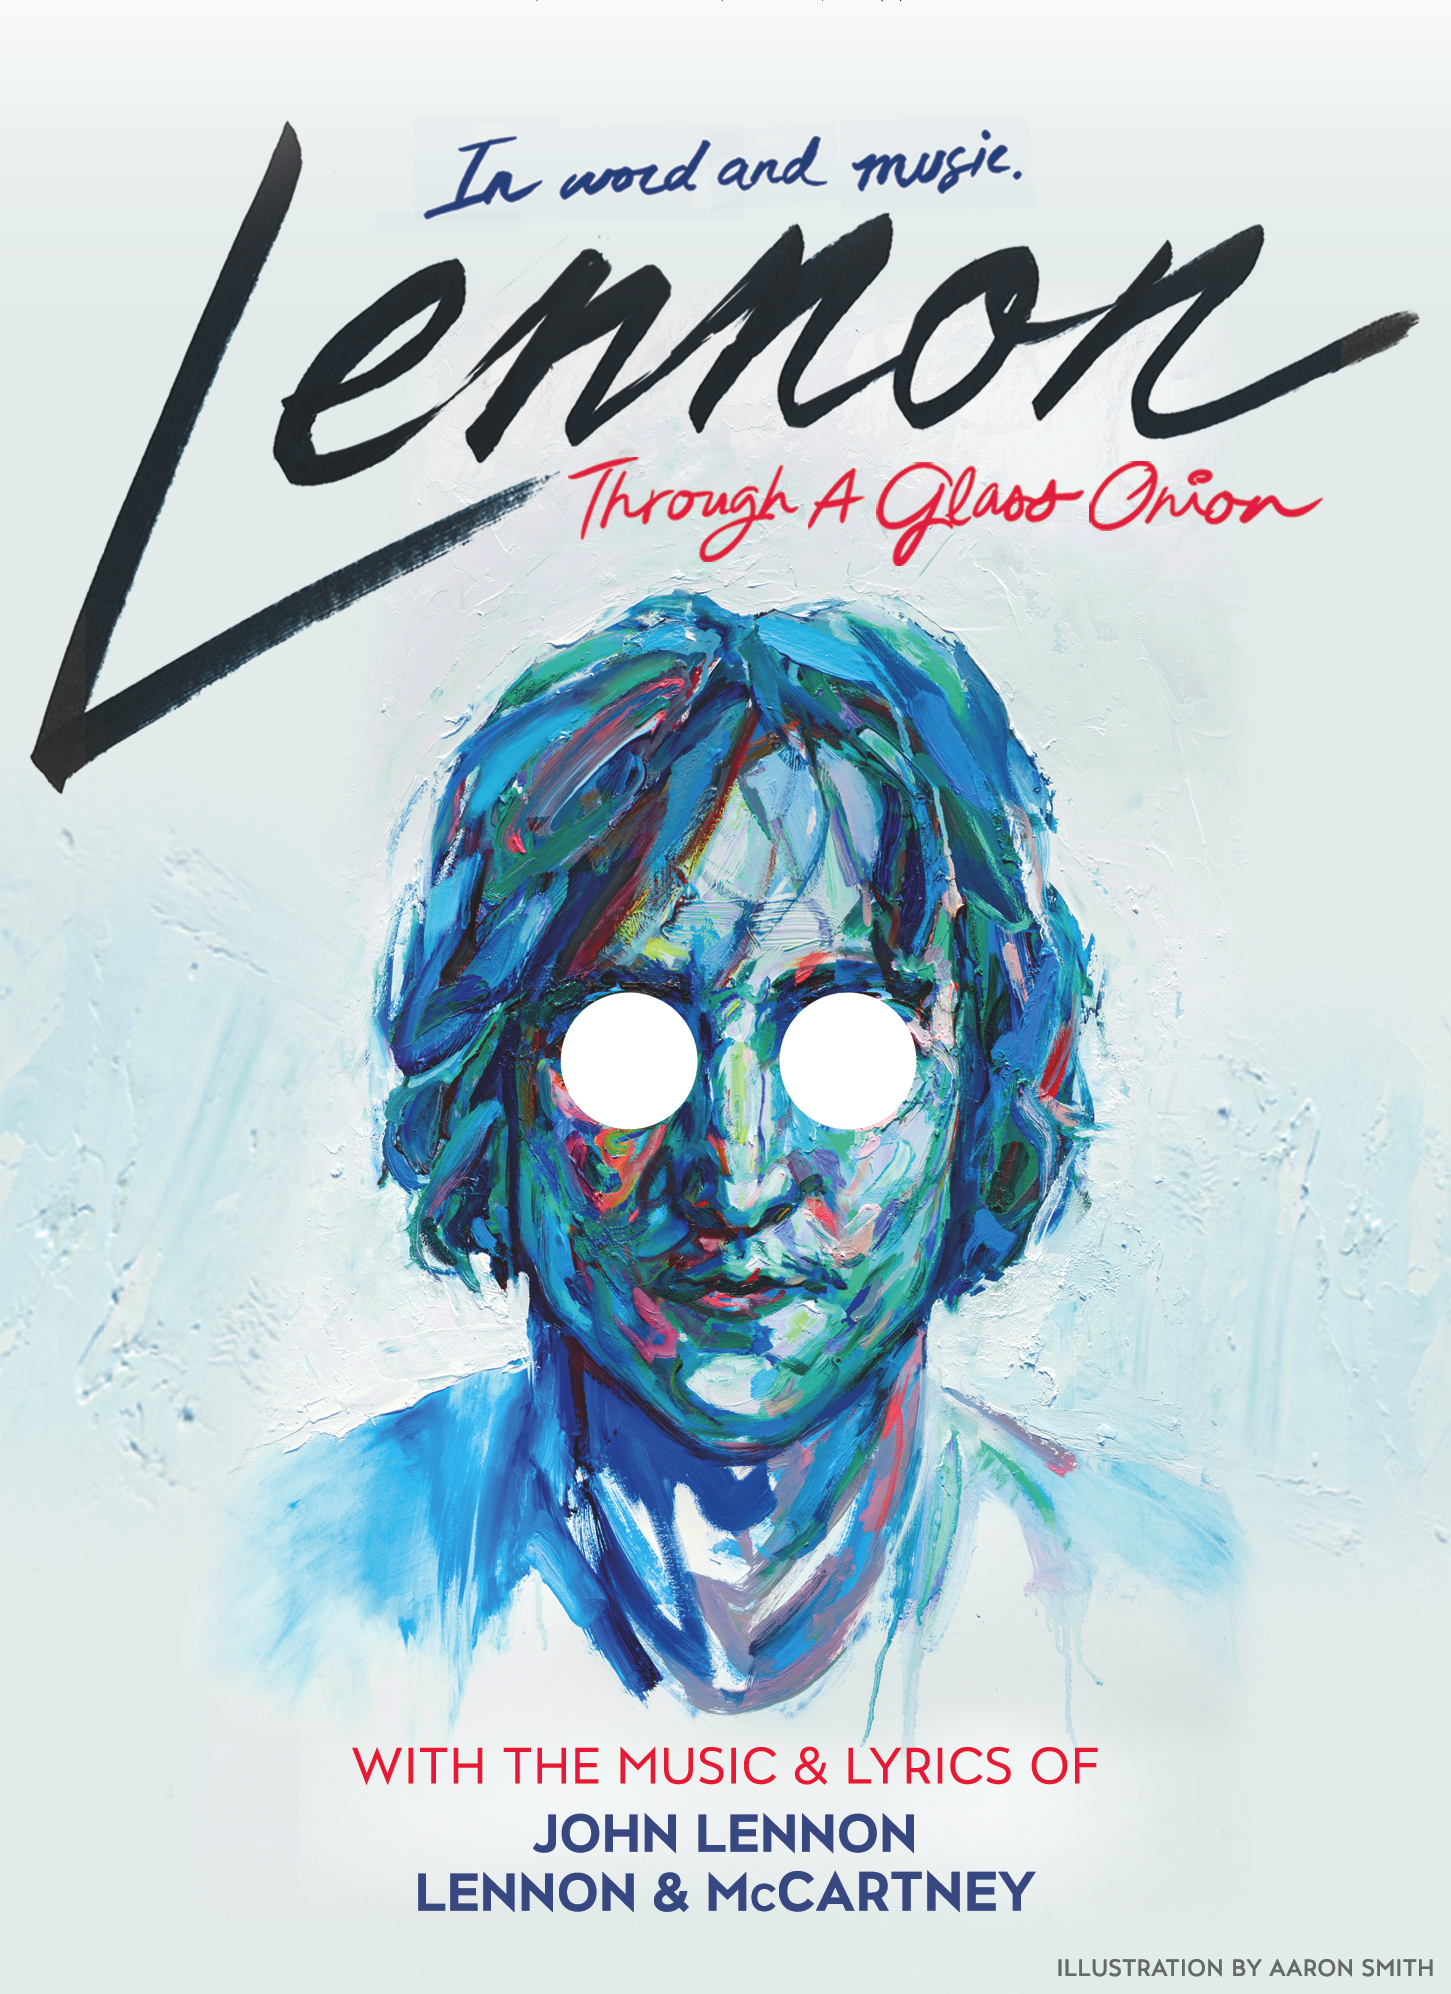 ジョン レノンの人生を描いた舞台 Lennon レノン のテレビcmが公開 株式会社キョードー東京のプレスリリース